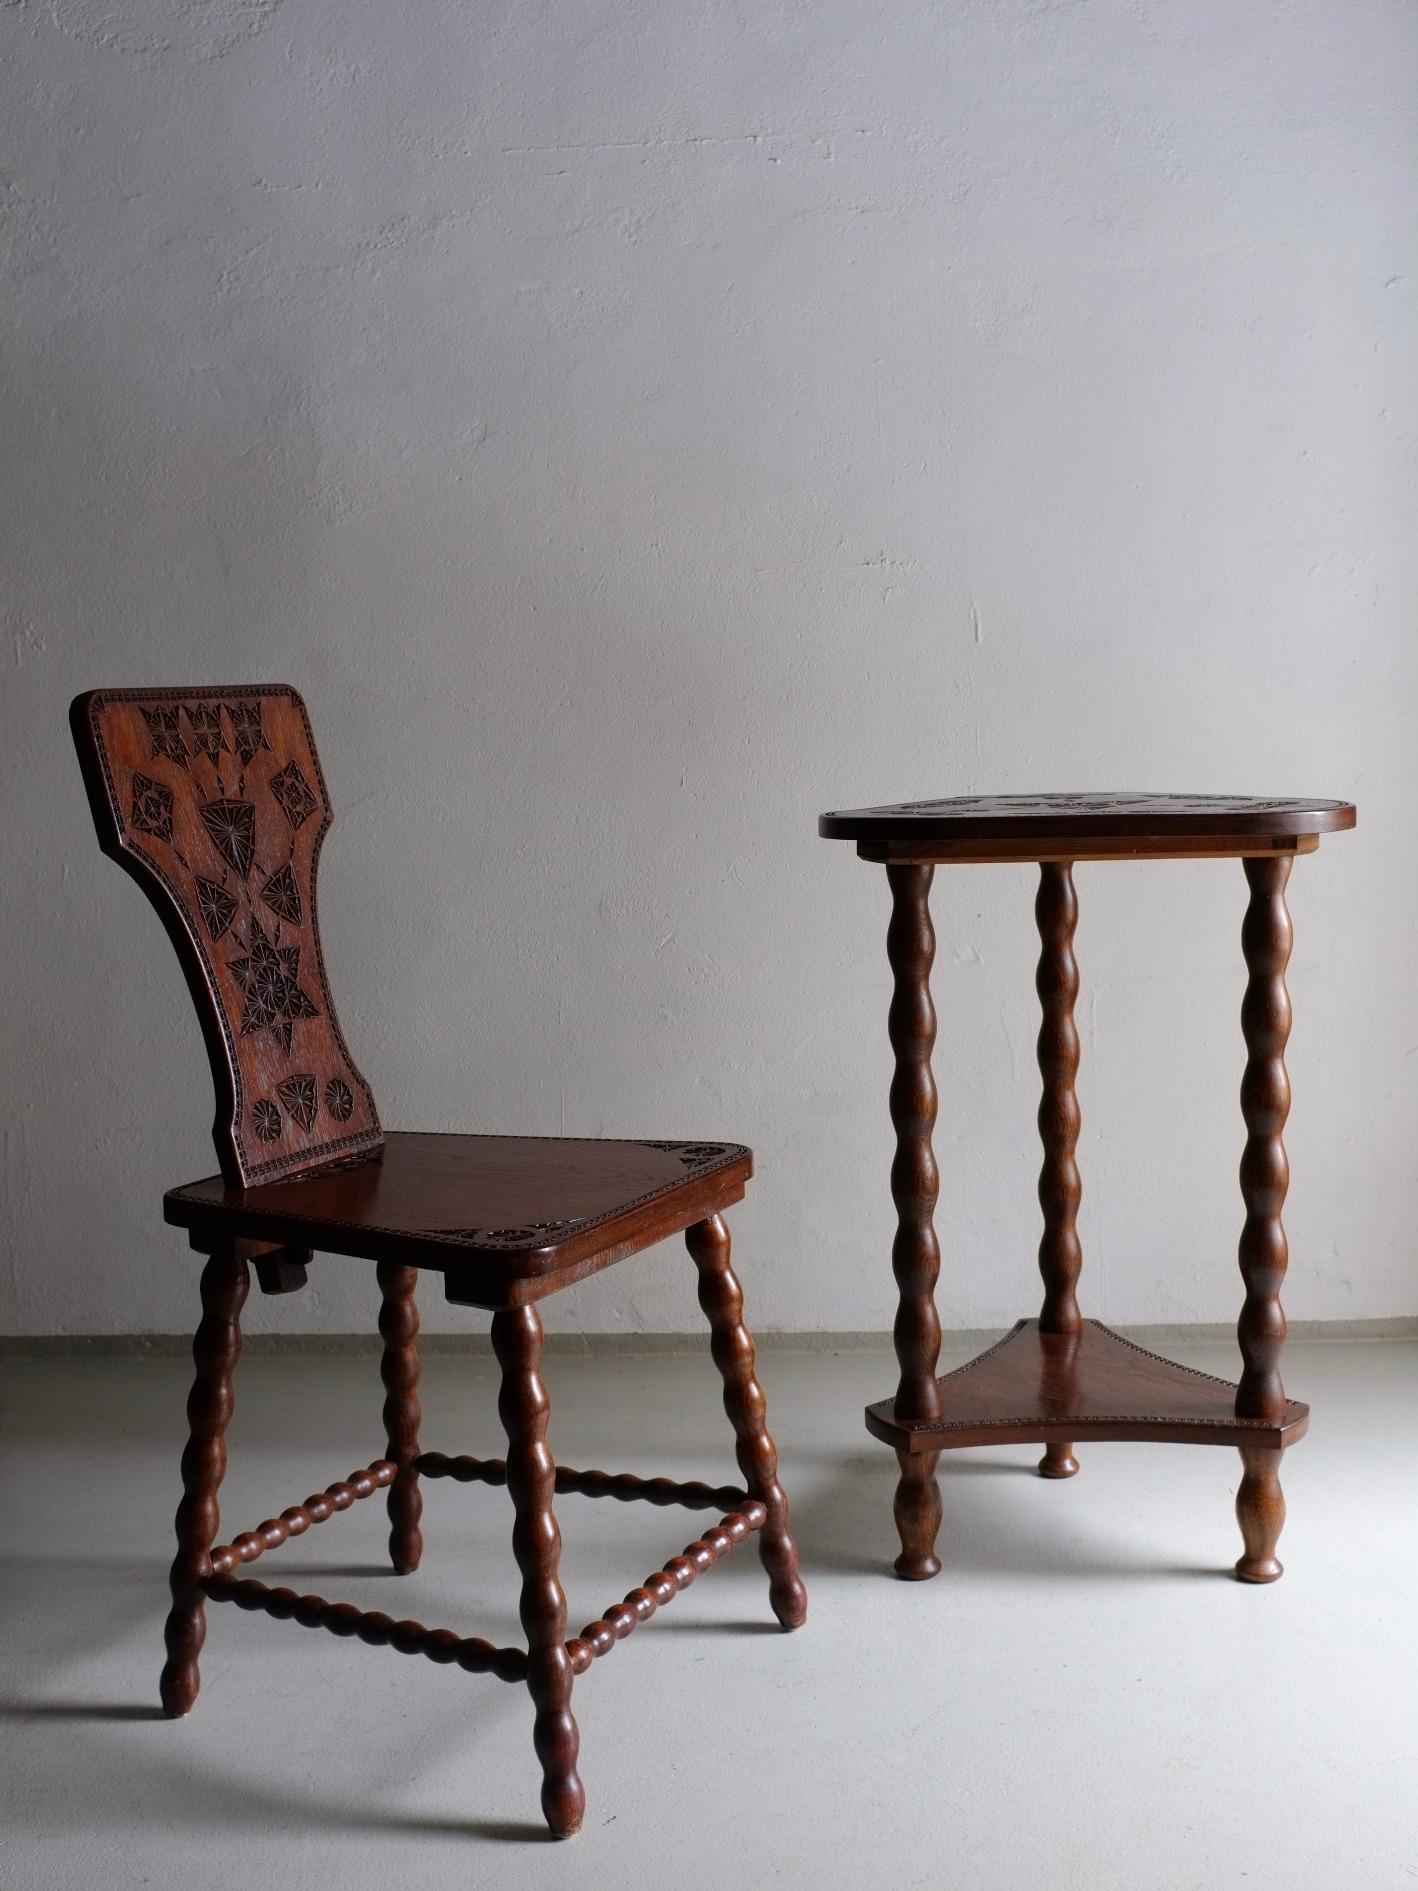 Ensemble de chaises et de tables en bois de chêne sculpté avec des pieds tournés au fuseau.
Chaise : H 90 cm, H(siège) 46 cm, L 42 cm, P 45 cm
Table : H 76 cm, L 48 cm, P 48 cm